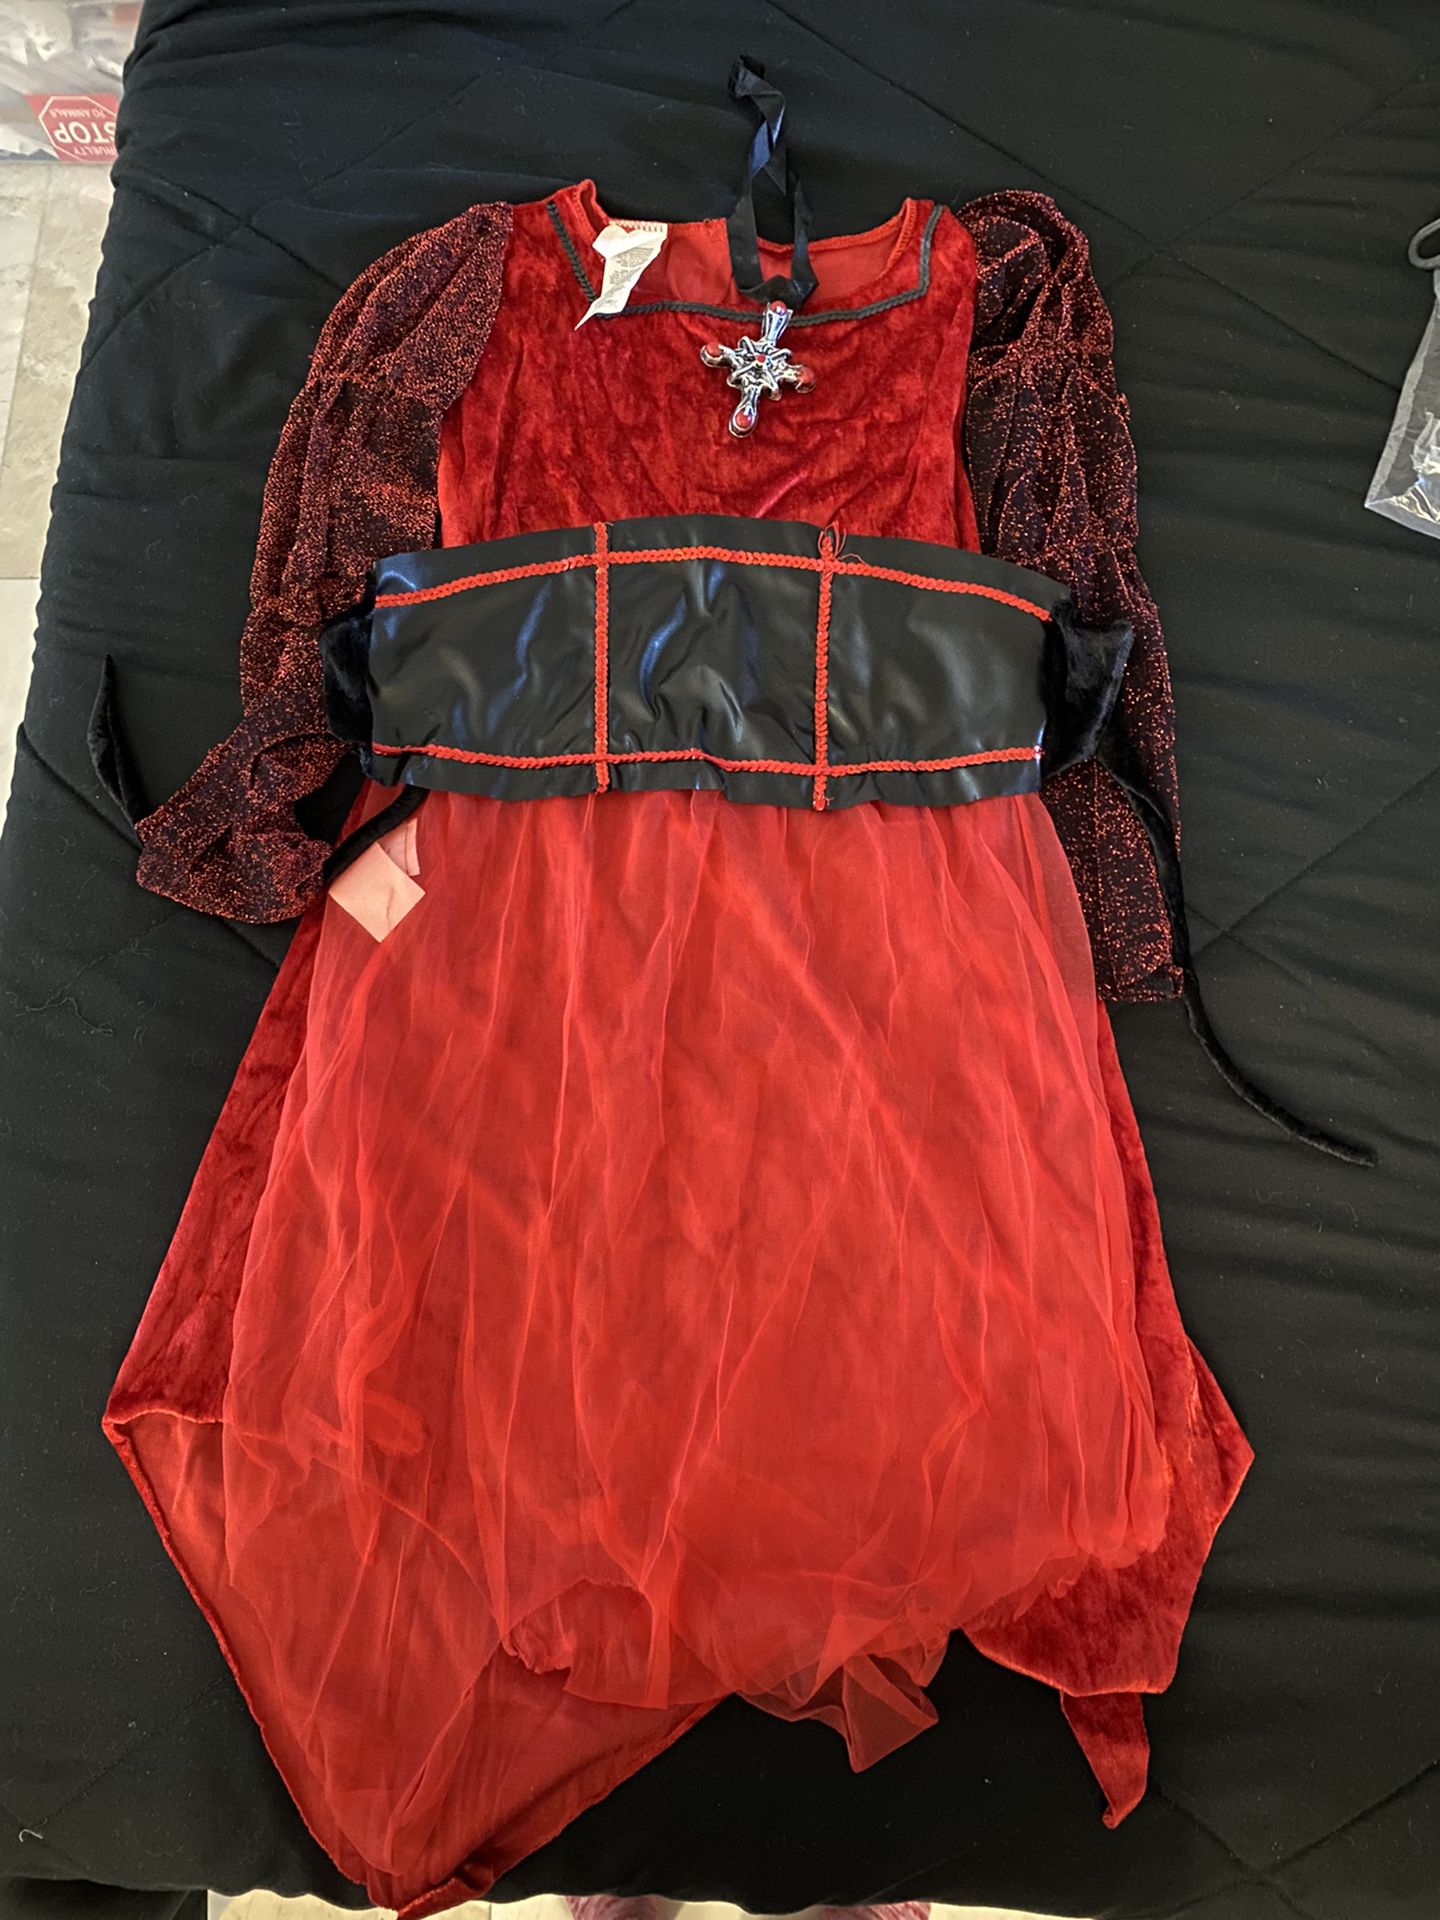 Child Vampire Costume